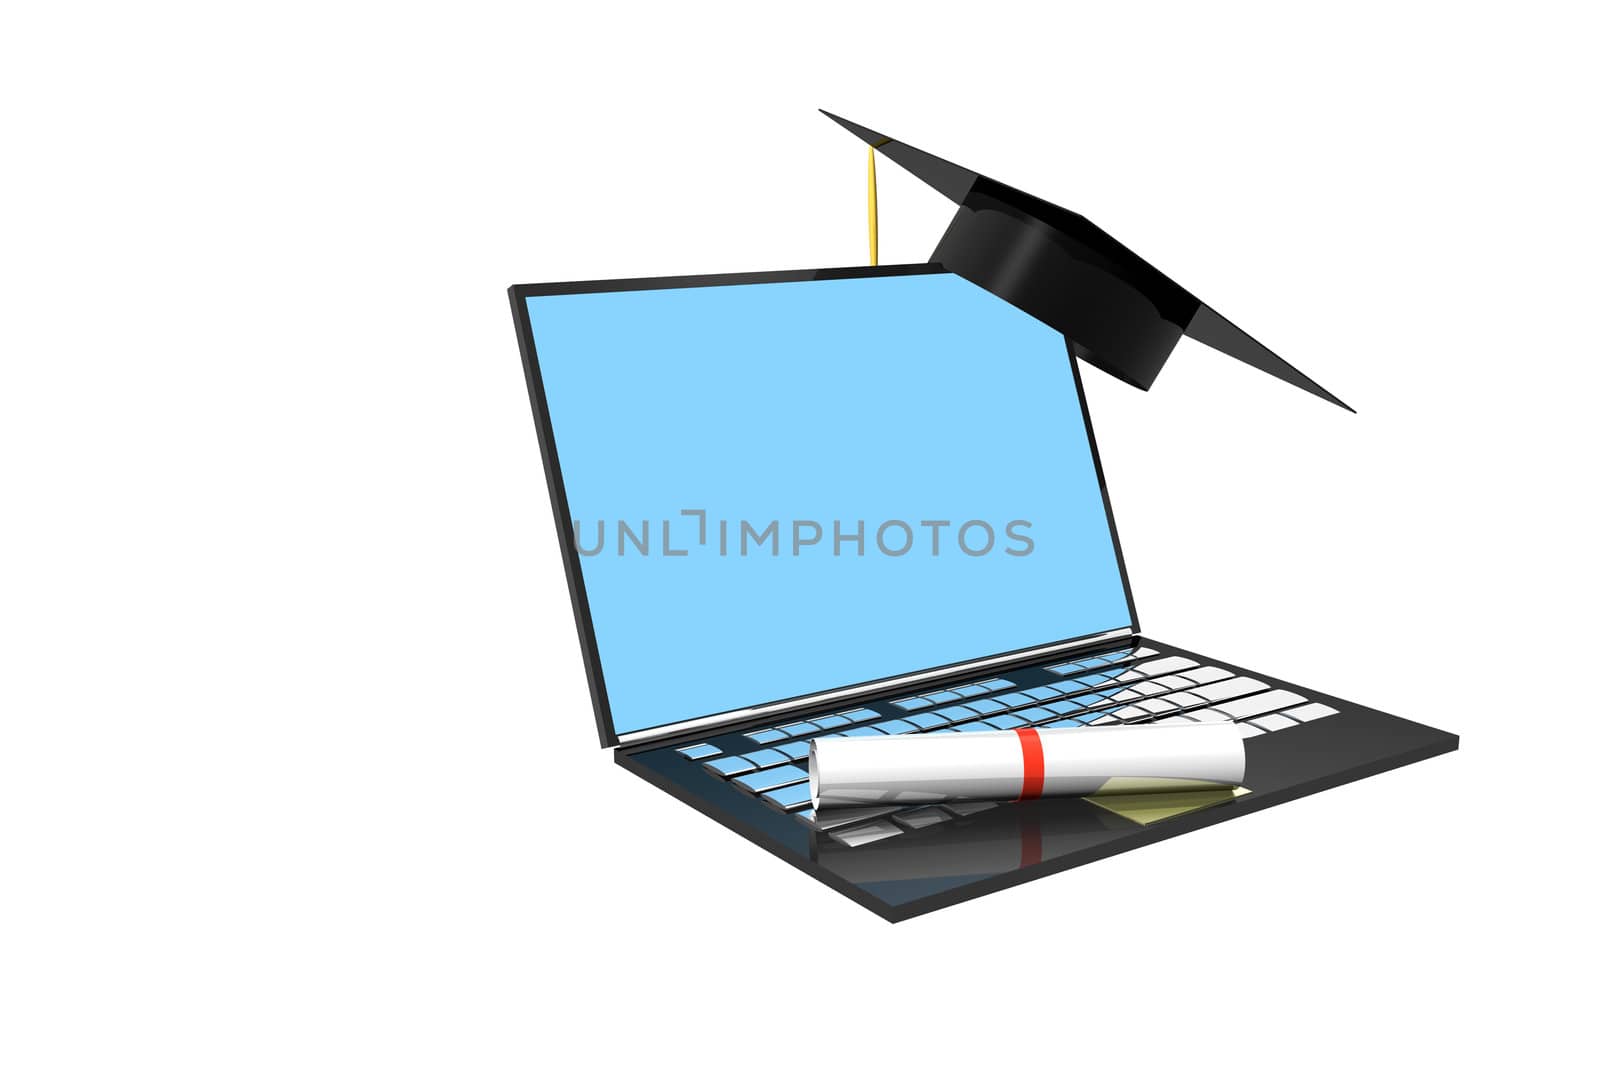 Diploma and graduation cap on laptop computer